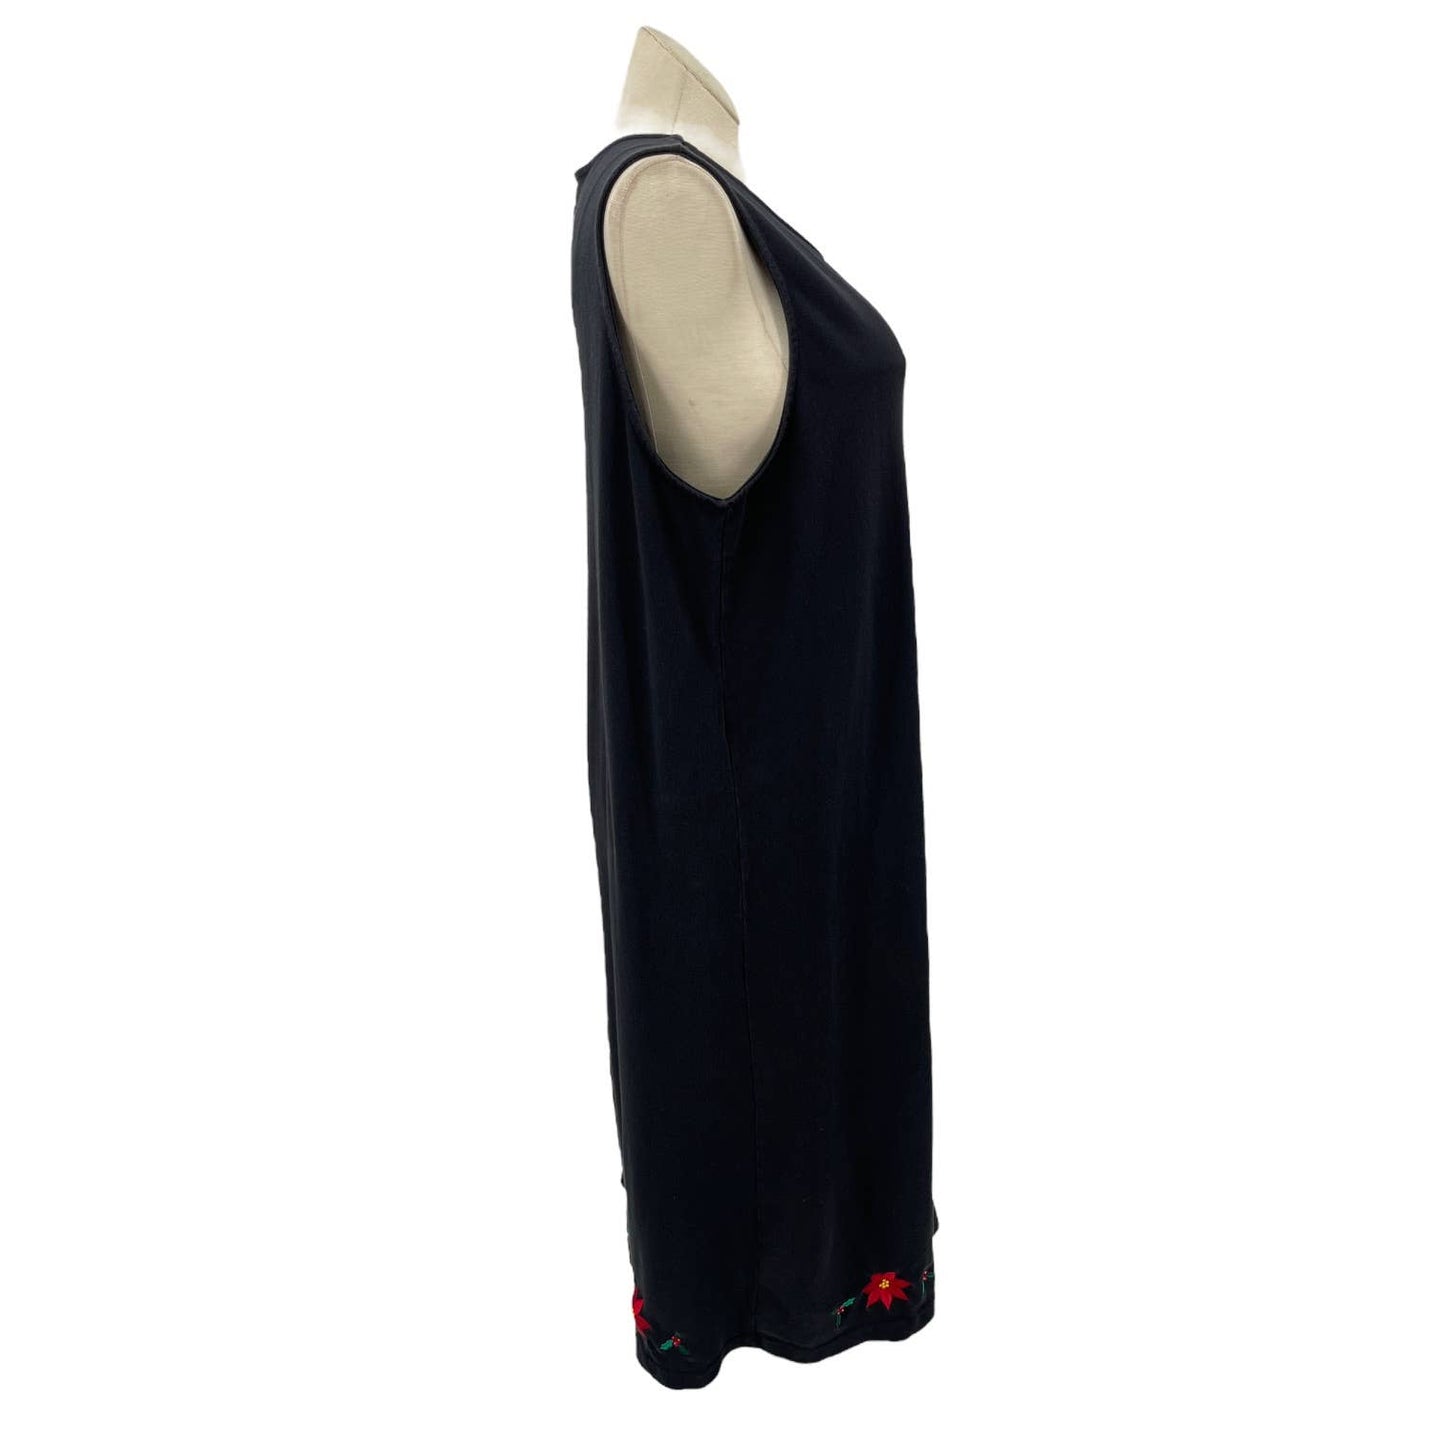 Vintage 90s Black Tank Style Dress Poinsettia Applique Sleeveless Bechamel Sz XL